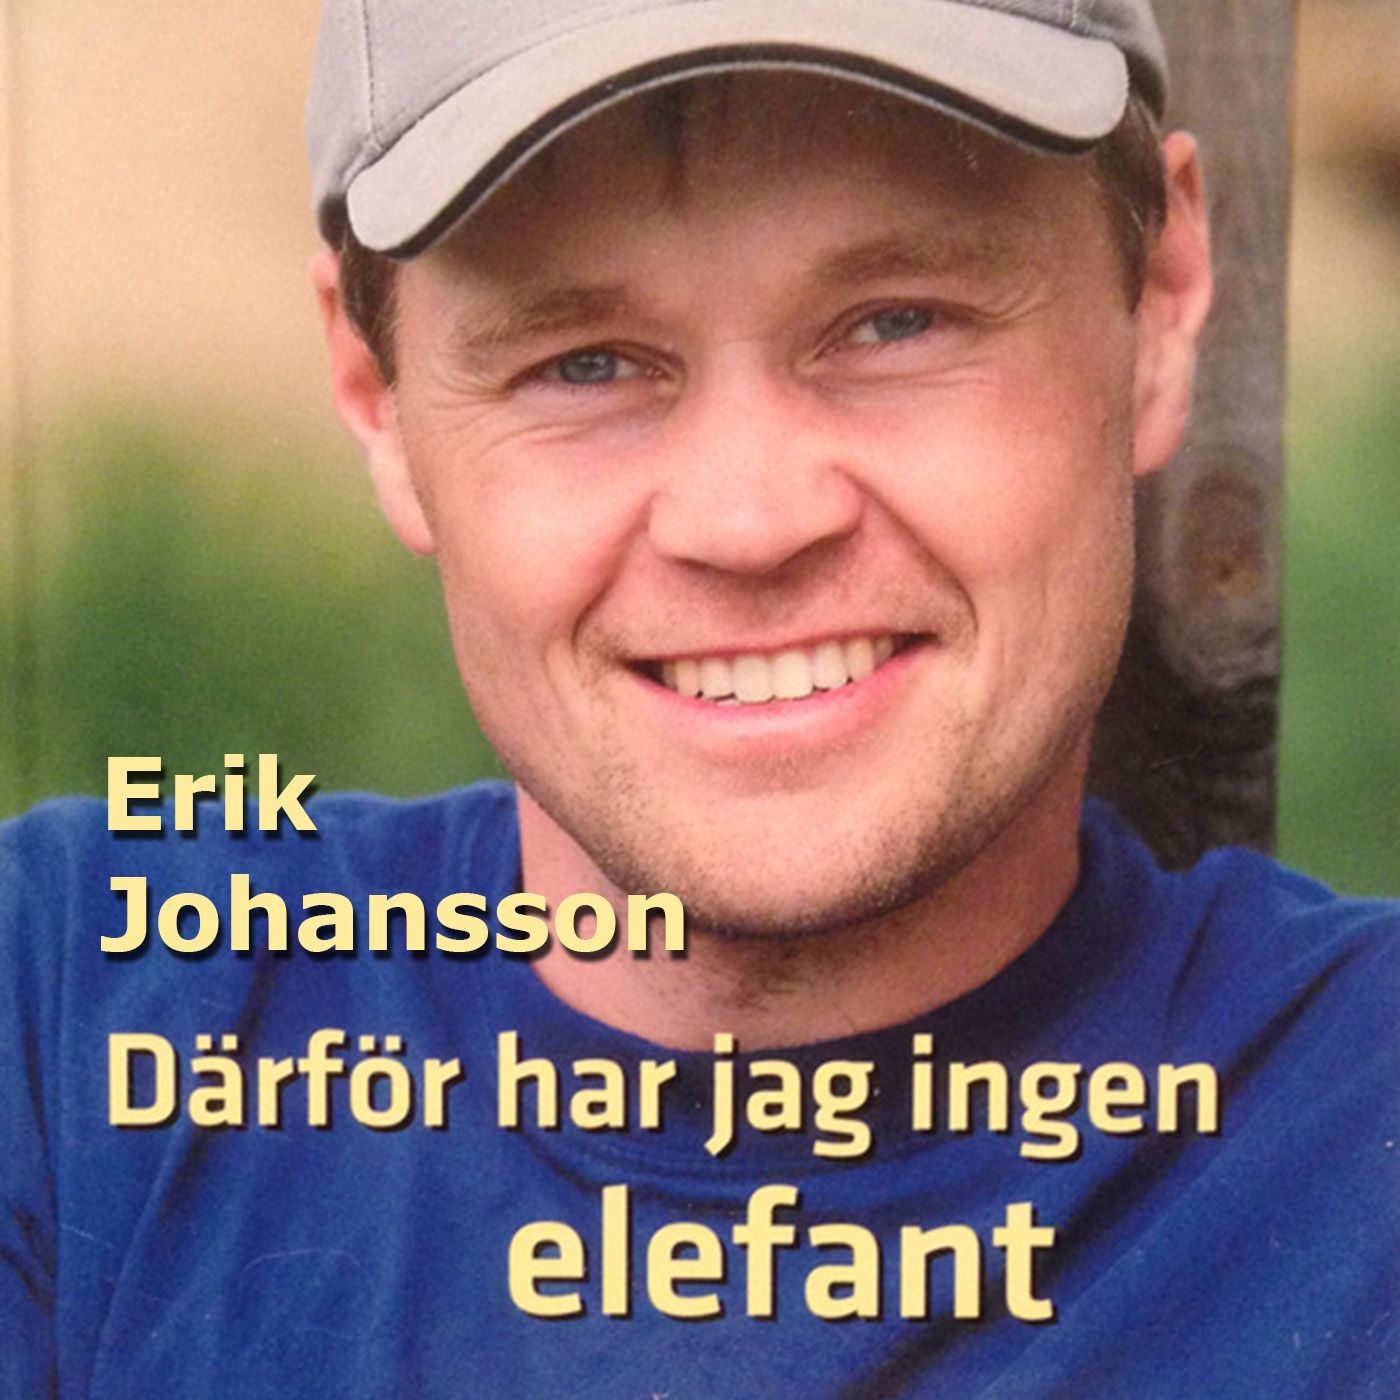 Därför har jag ingen elefant, audiobook by Erik Johansson